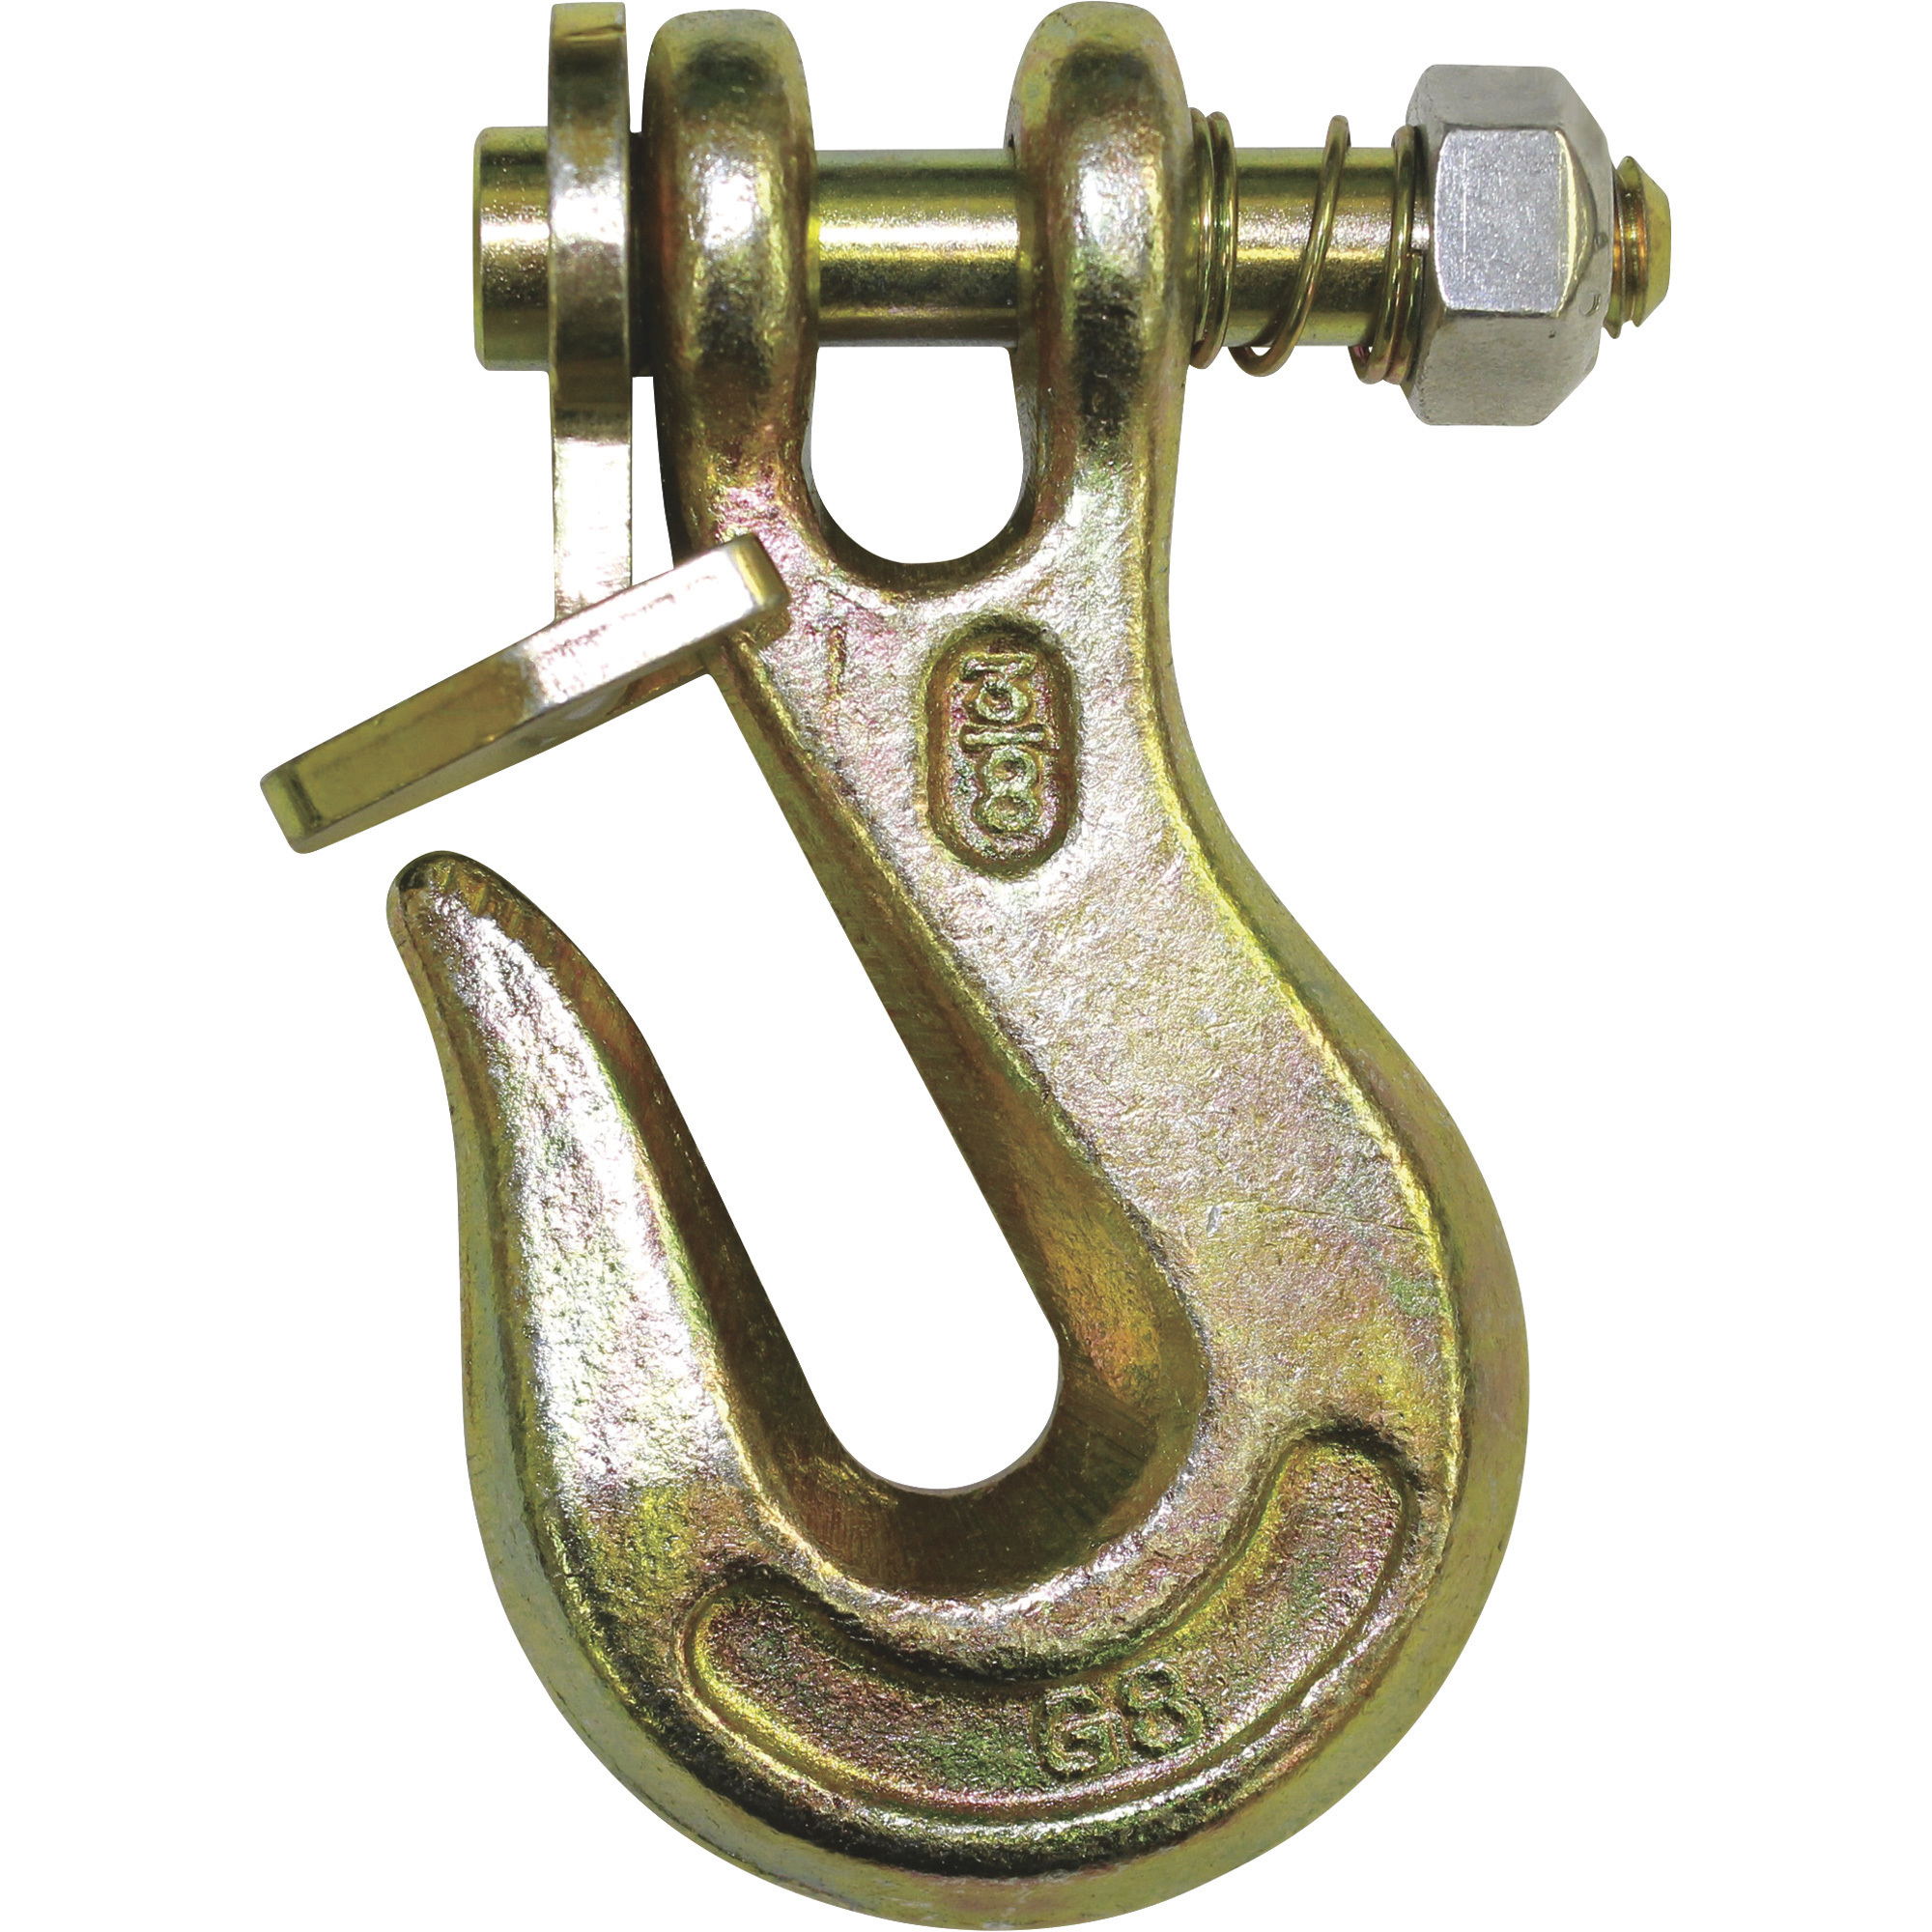 B/A Products Twist Lock Clevis Grab Hook â 1/4Inch, 3.5Inch L, 3,500-Lb. Capacity, Model G8-200-14